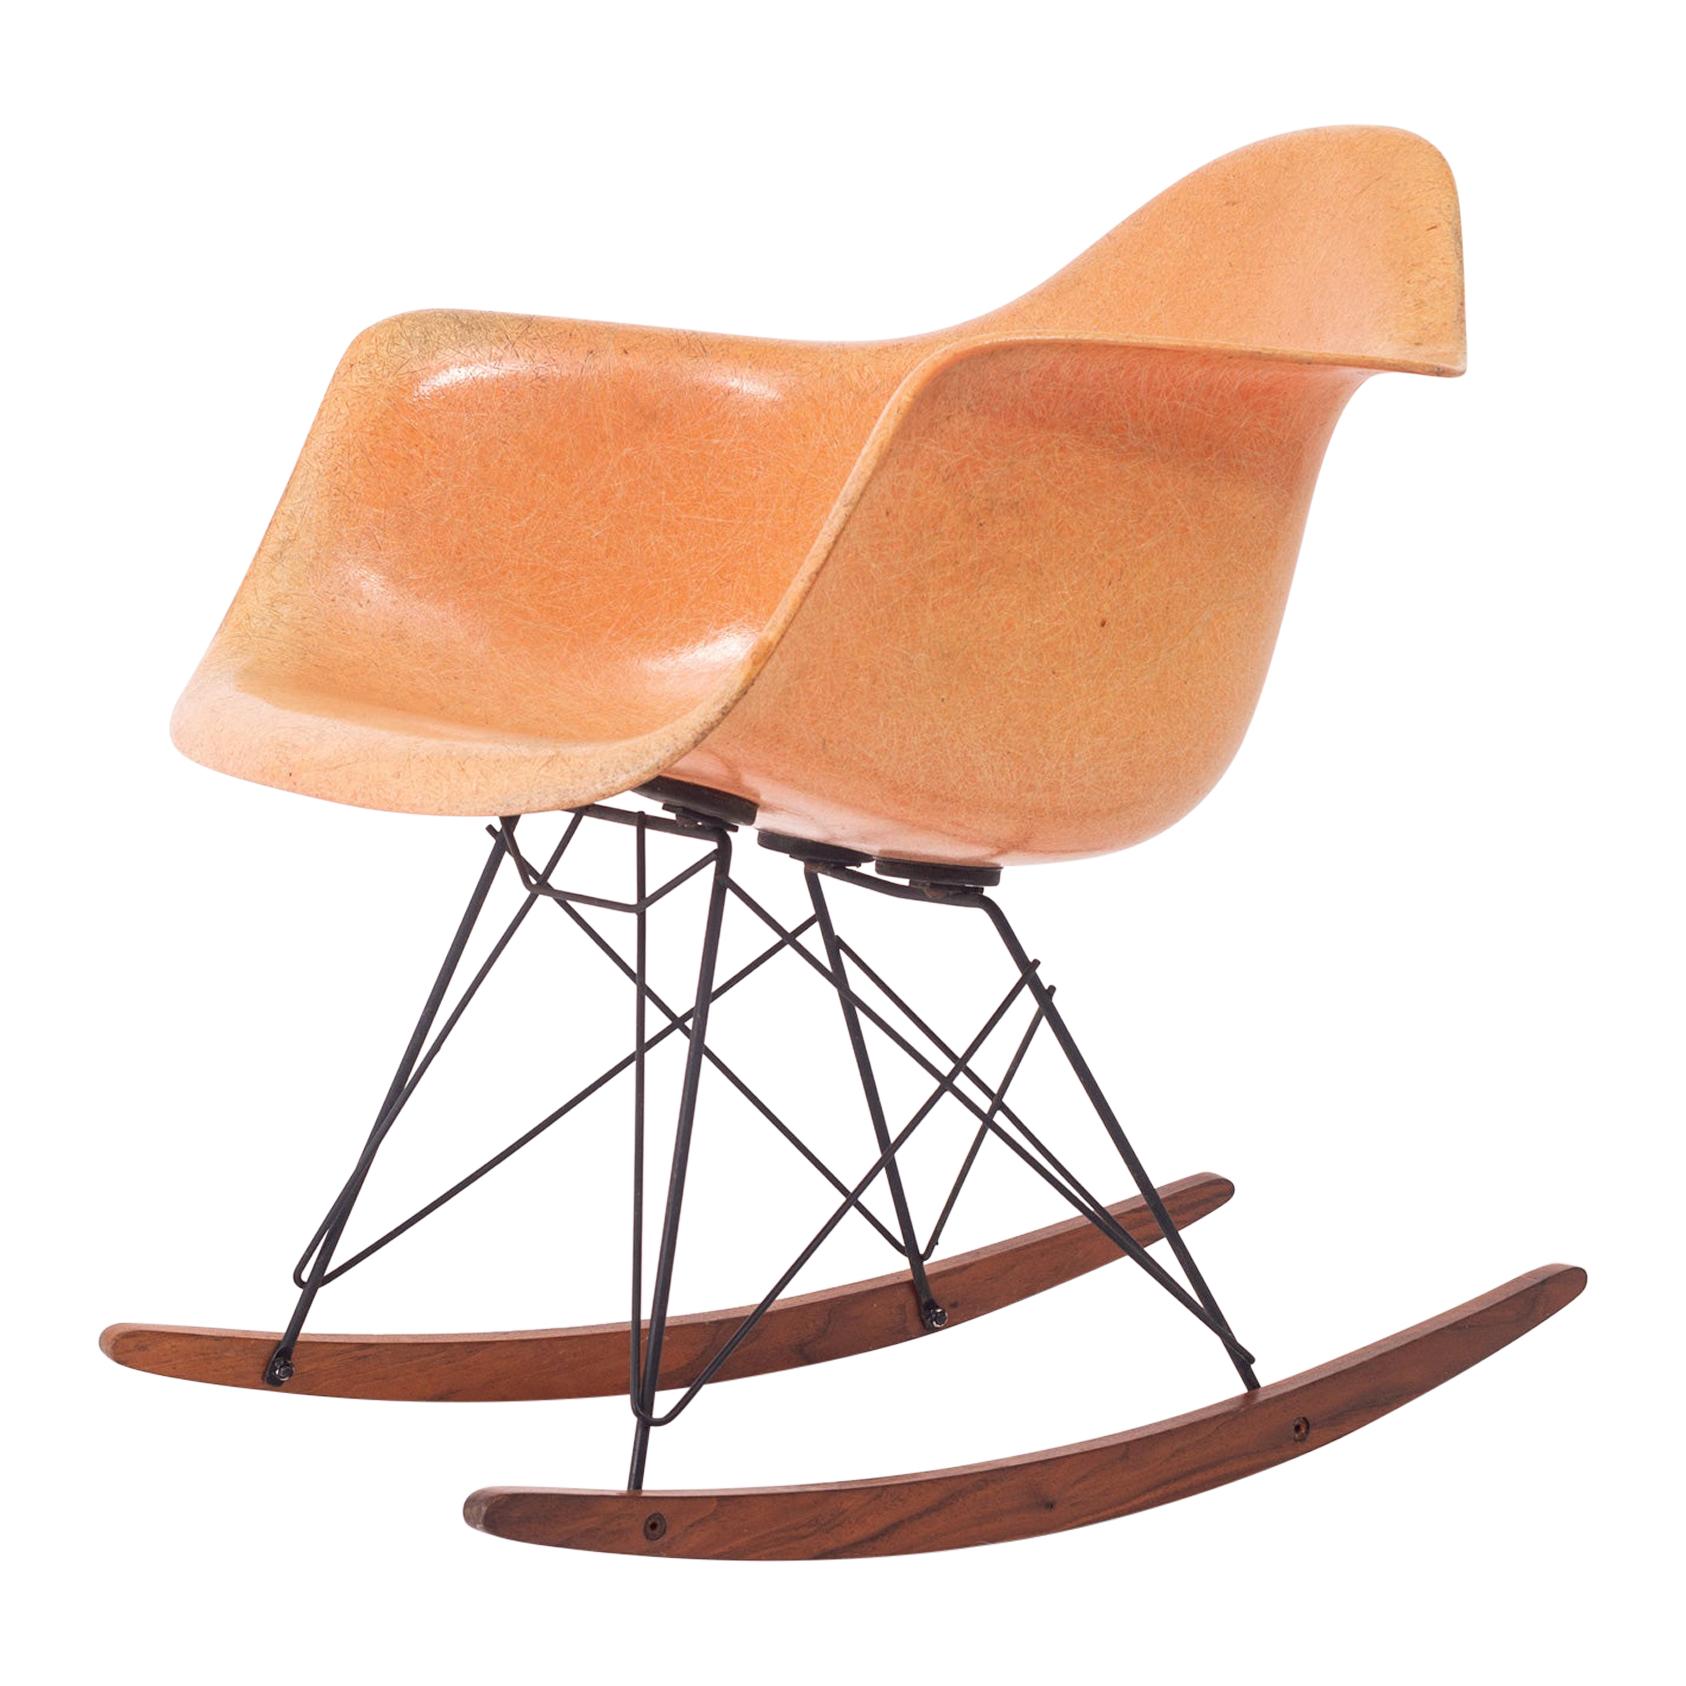 Charles & Ray Eames RAR Rocking Chair “Zenith”